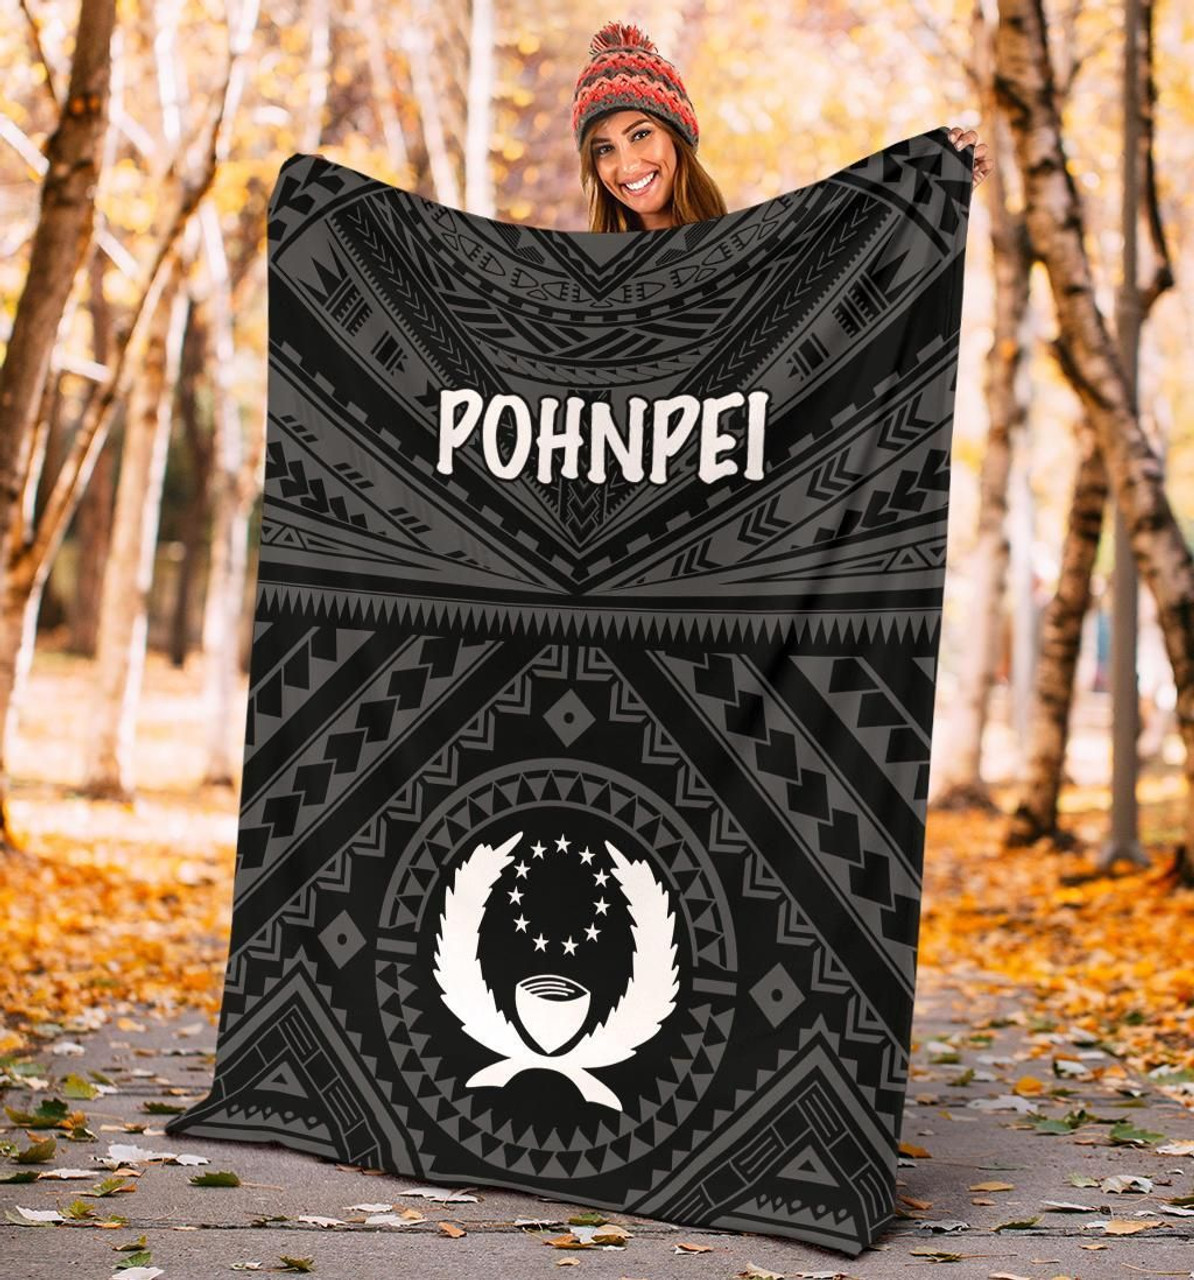 Pohnpei Premium Blanket - Pohnpei Seal With Polynesian Tattoo Style (Black) 5